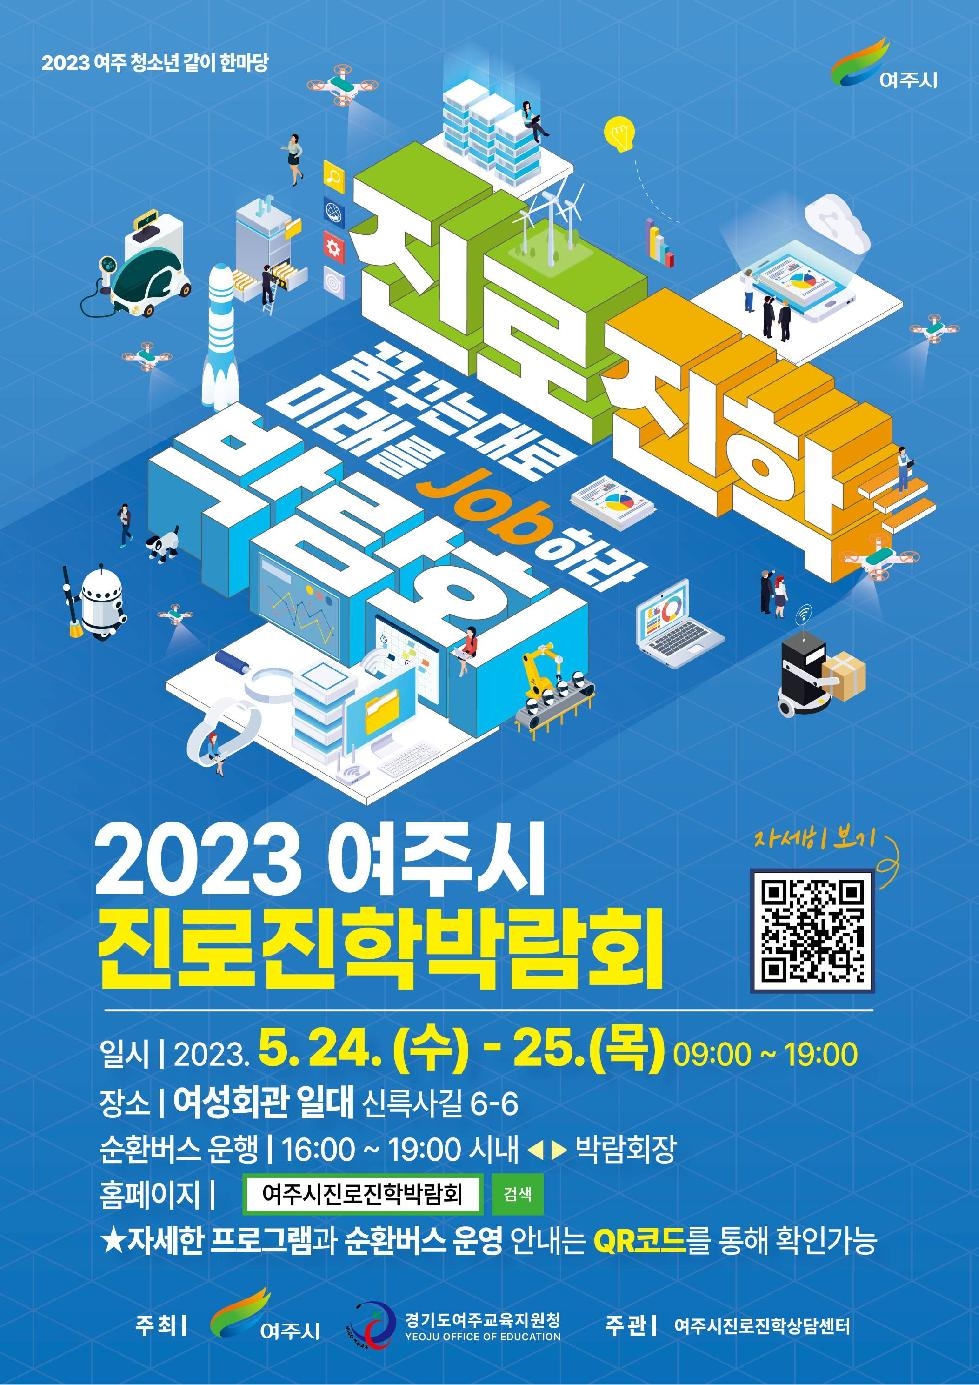 2023 여주시 진로진학박람회 “꿈꾸는 대로 미래를 Job하라.”개최  